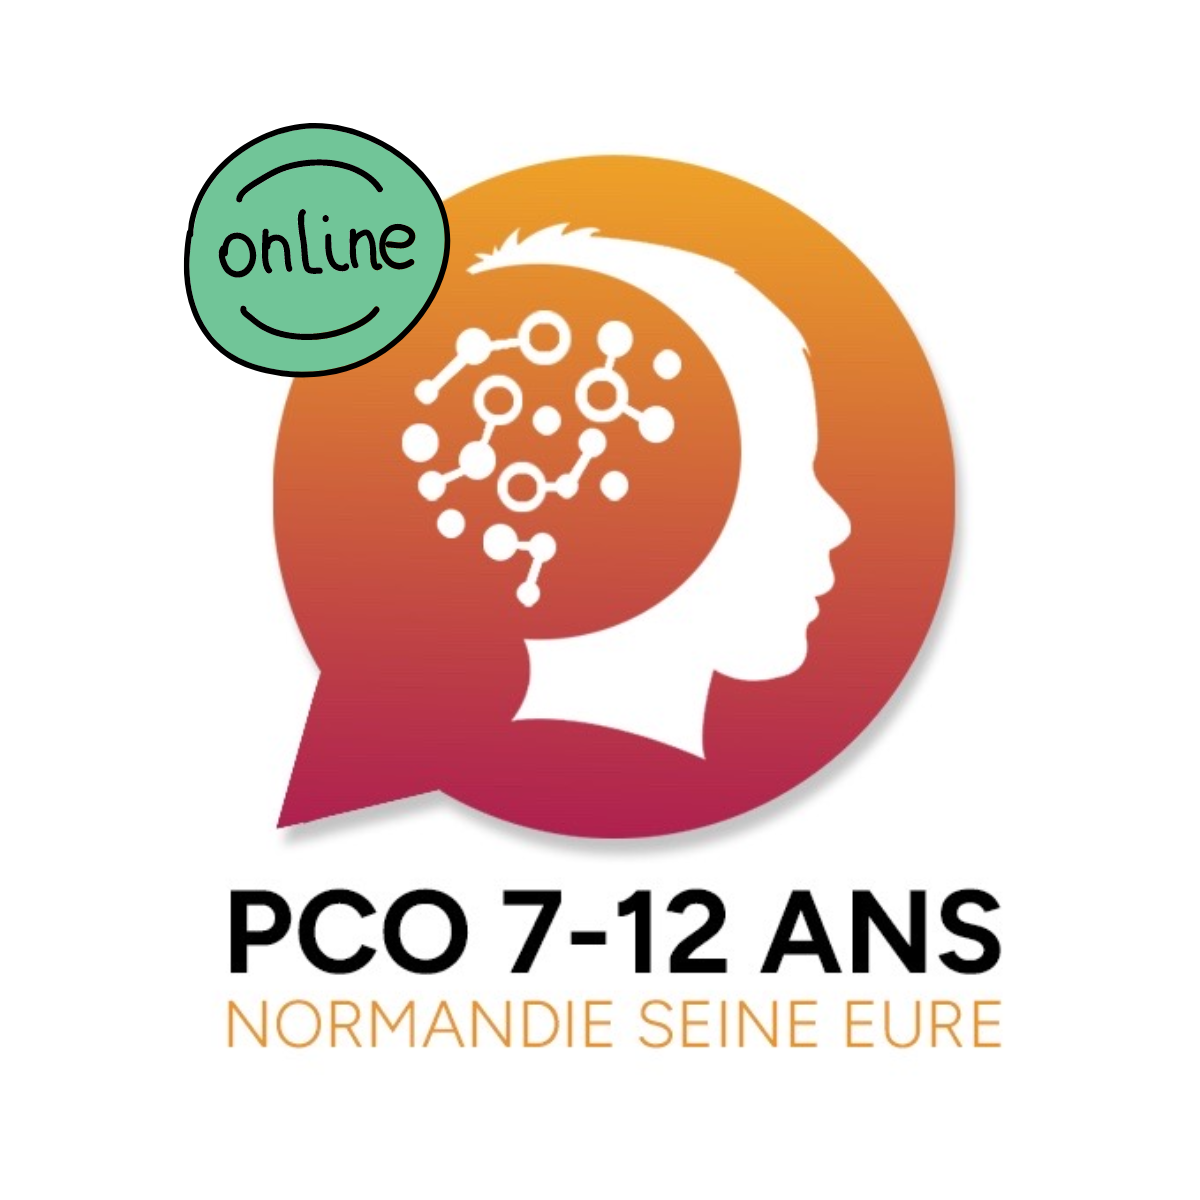 Lancement du site internet de la PCO 7-12 ans